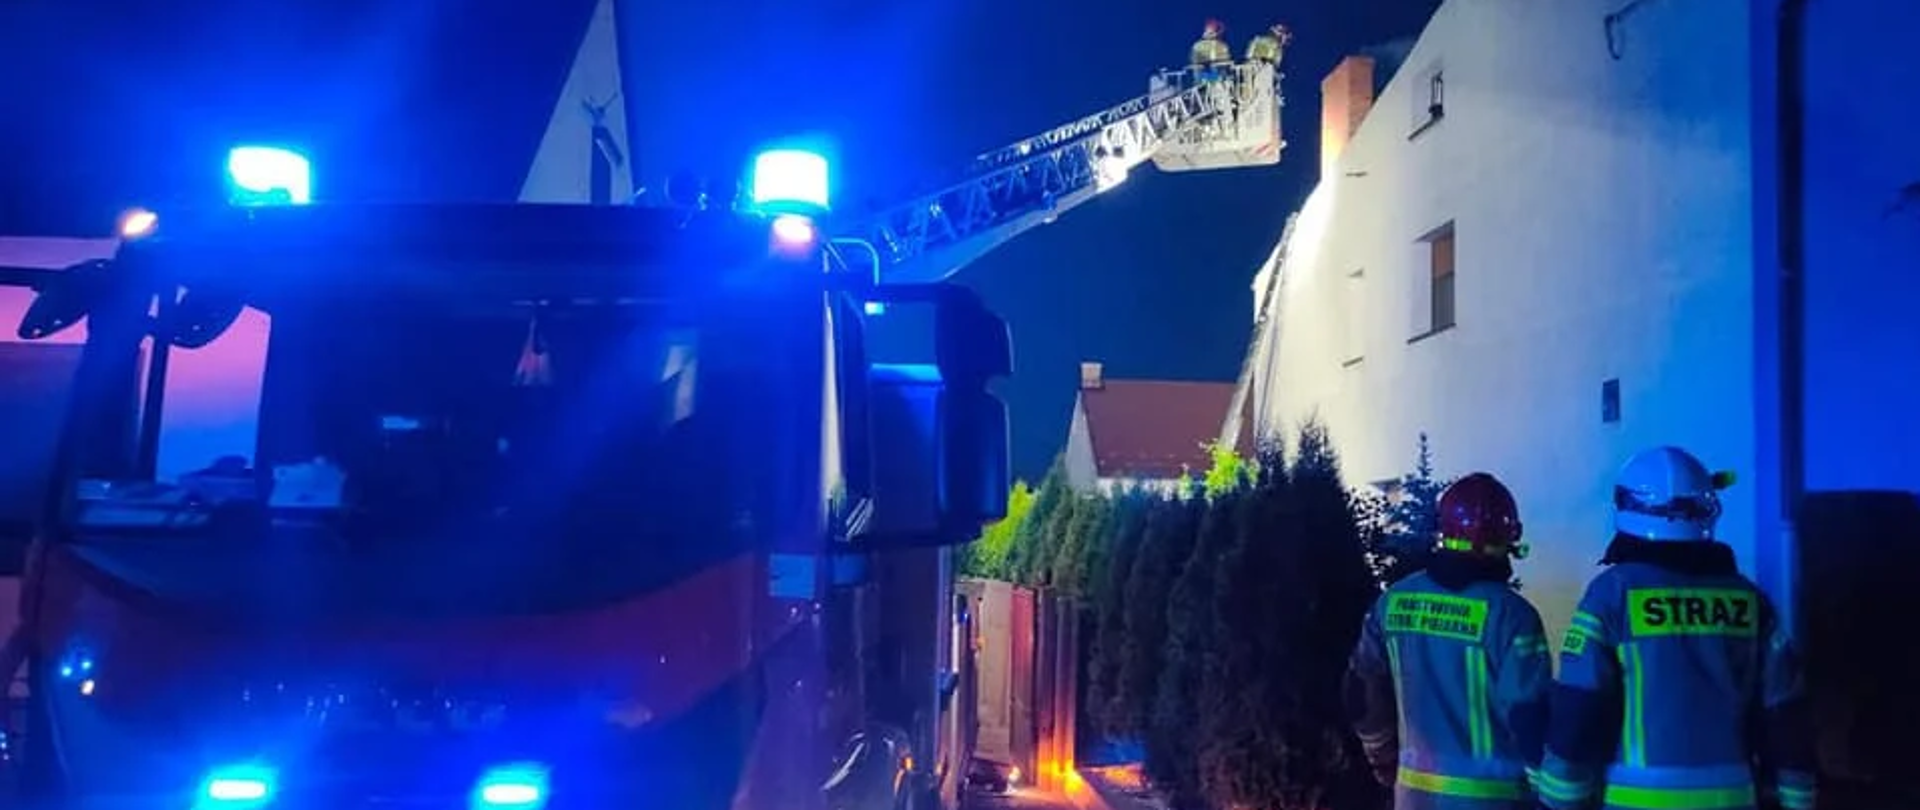 Zdjęcie przedstawia samochód pożarniczy z rozłożoną drabina. Przy samochodzie stoją strażacy.